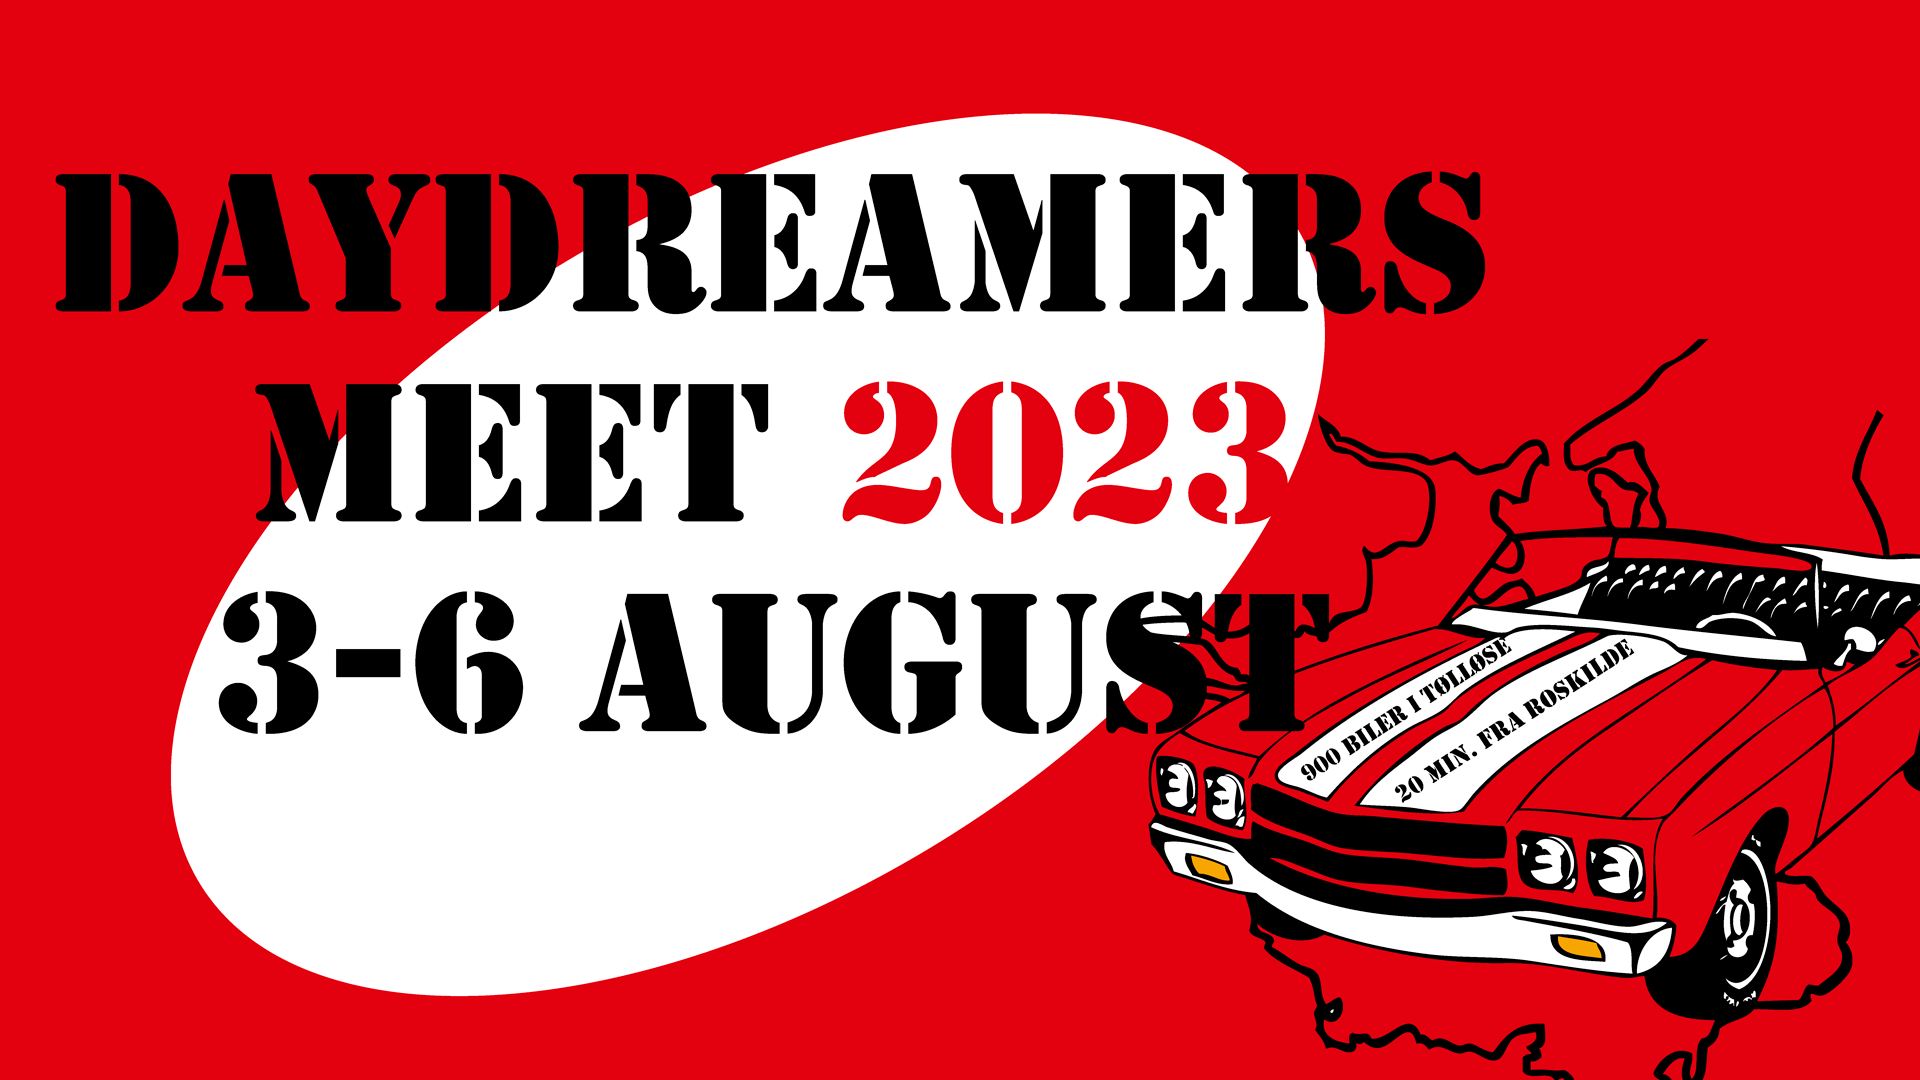 Daydreamers Meet 2023